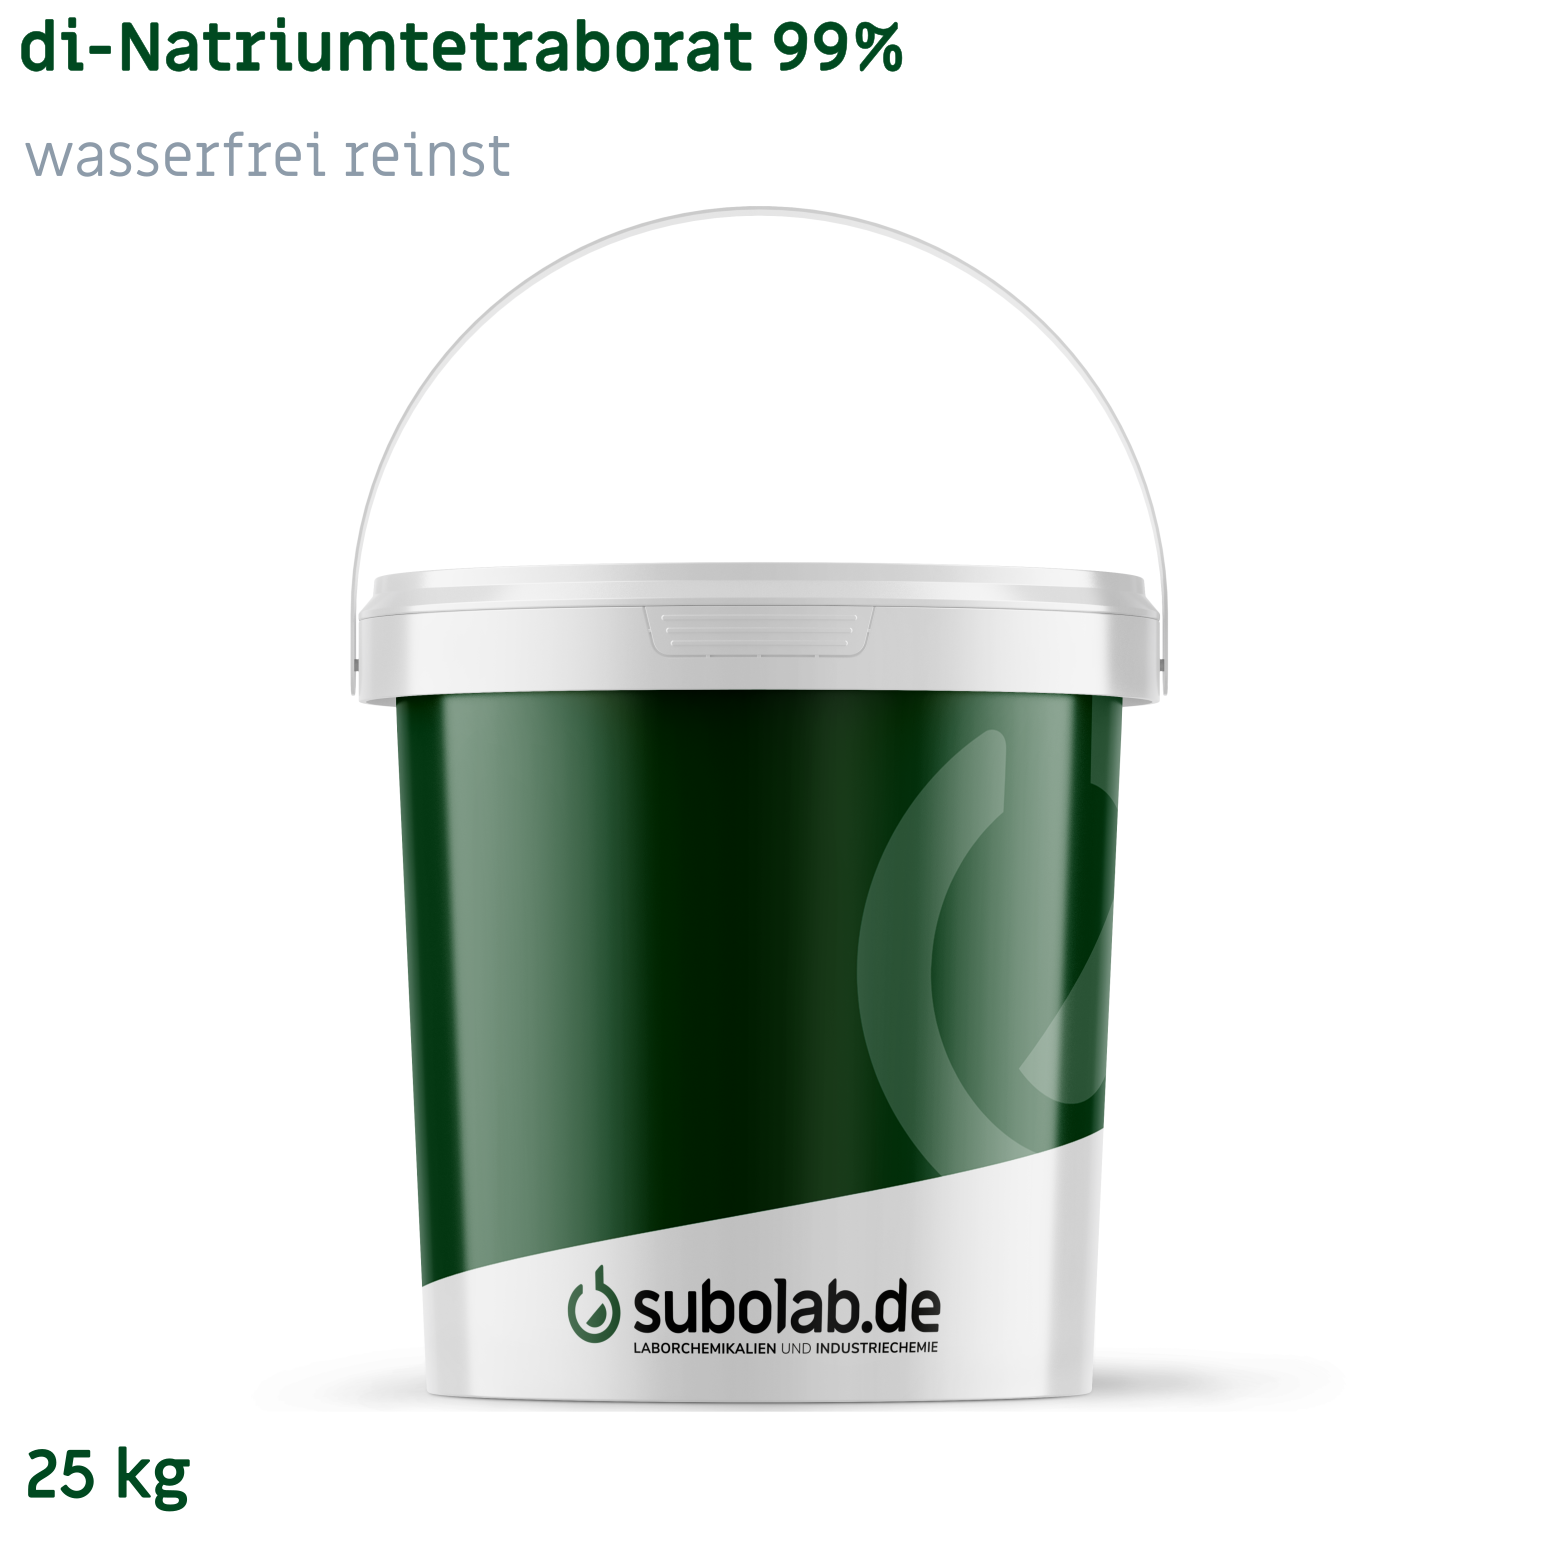 Bild von di-Natriumtetraborat 99% wasserfrei reinst (25 kg)